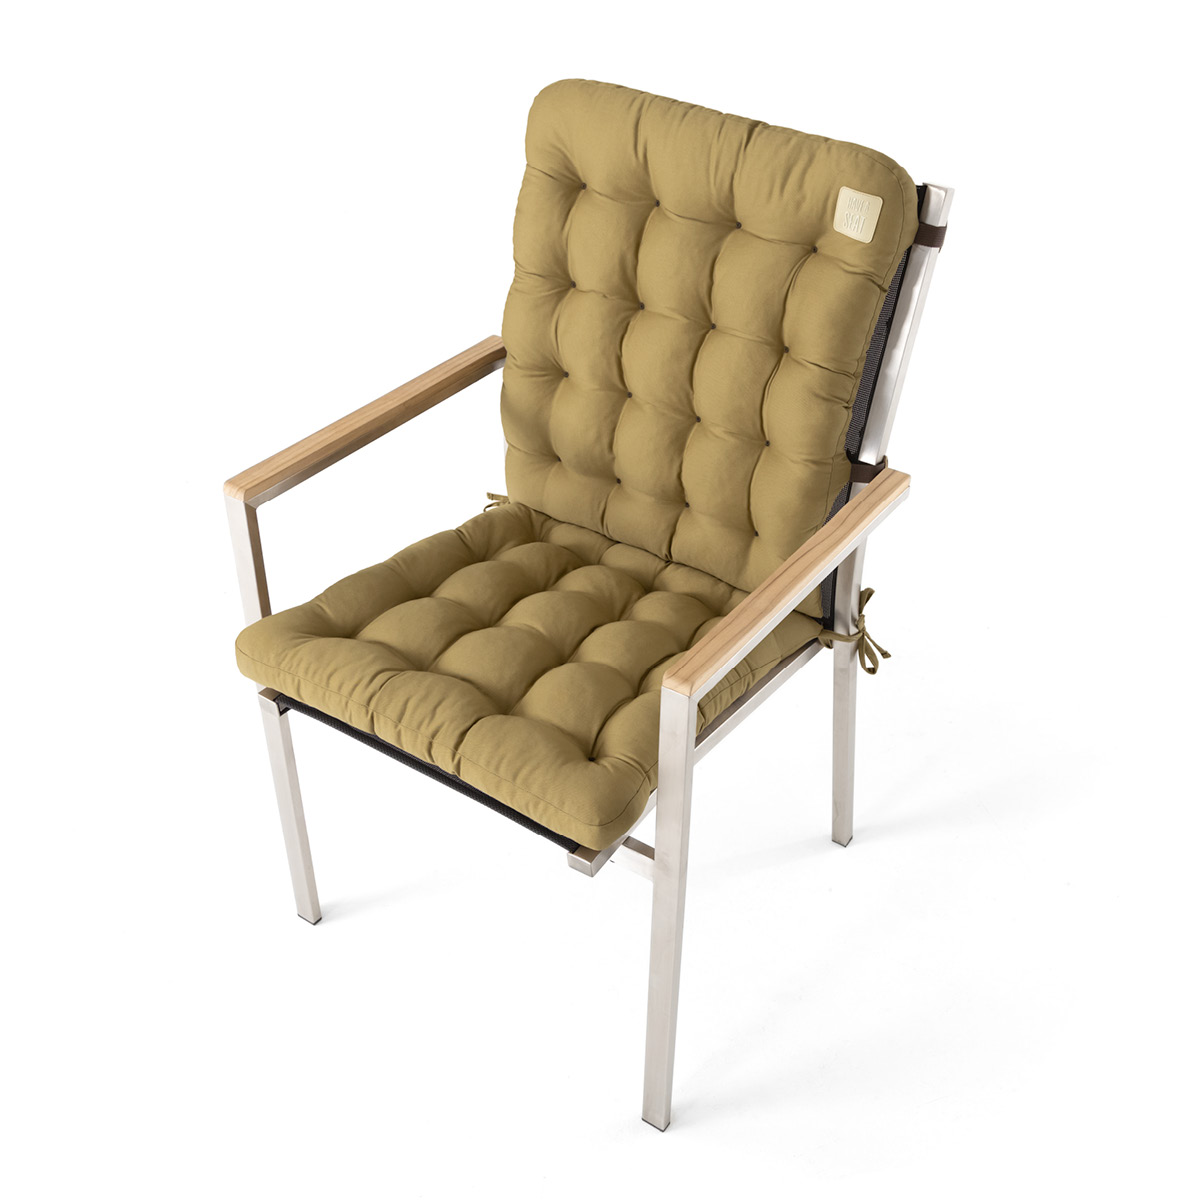 Sitzkissen mit Rückenlehne beige | dicke Polsterung mit Schleifen und Bänder zur Befestigung an Gartenstuhl / Stapelstuhl | HAVE A SEAT Living 